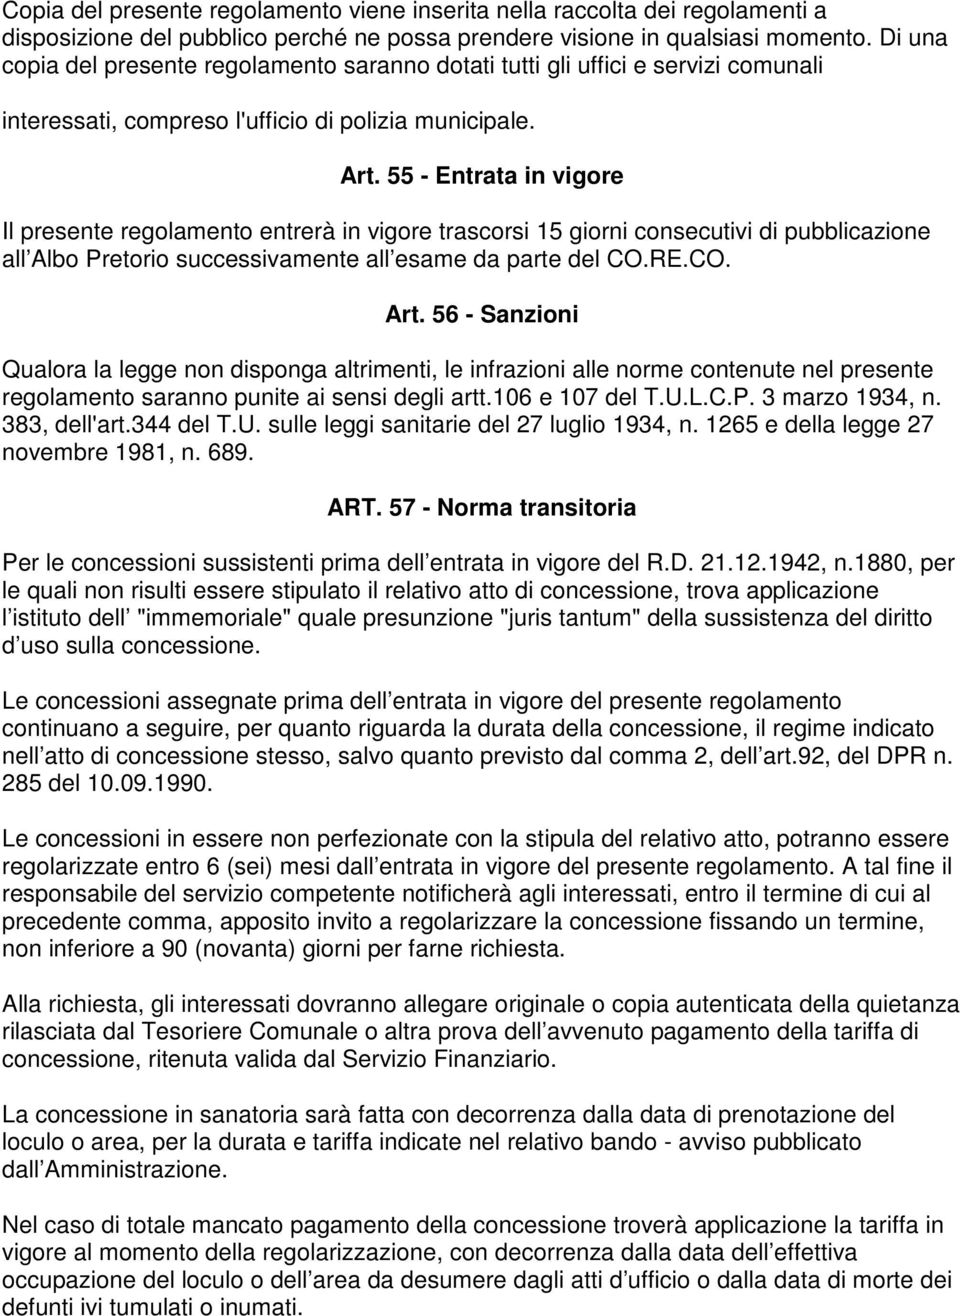 55 - Entrata in vigore Il presente regolamento entrerà in vigore trascorsi 15 giorni consecutivi di pubblicazione all Albo Pretorio successivamente all esame da parte del CO.RE.CO. Art.